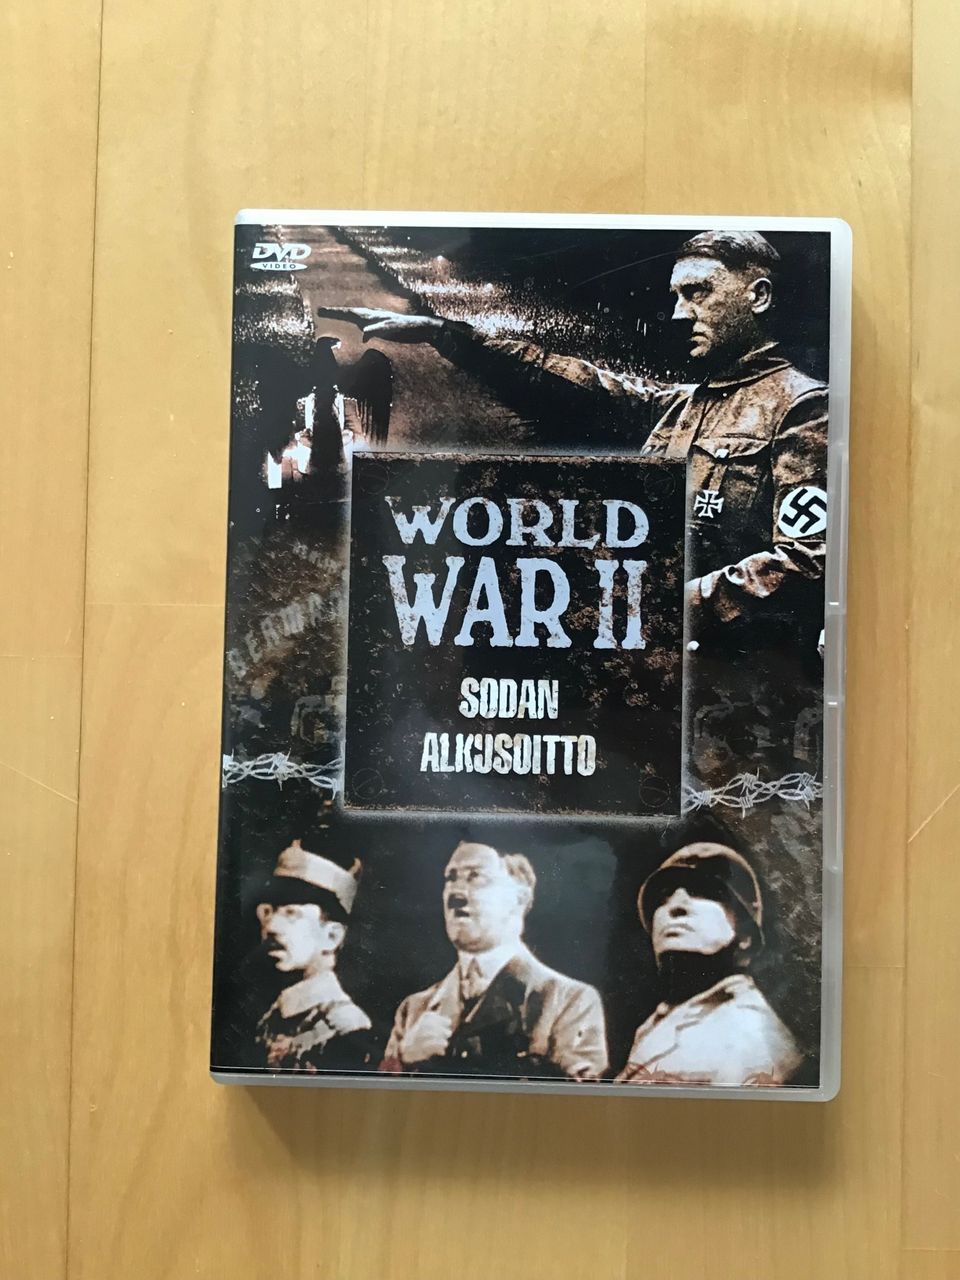 World War II Sodan alkusoitto ( 2005 ) DVD